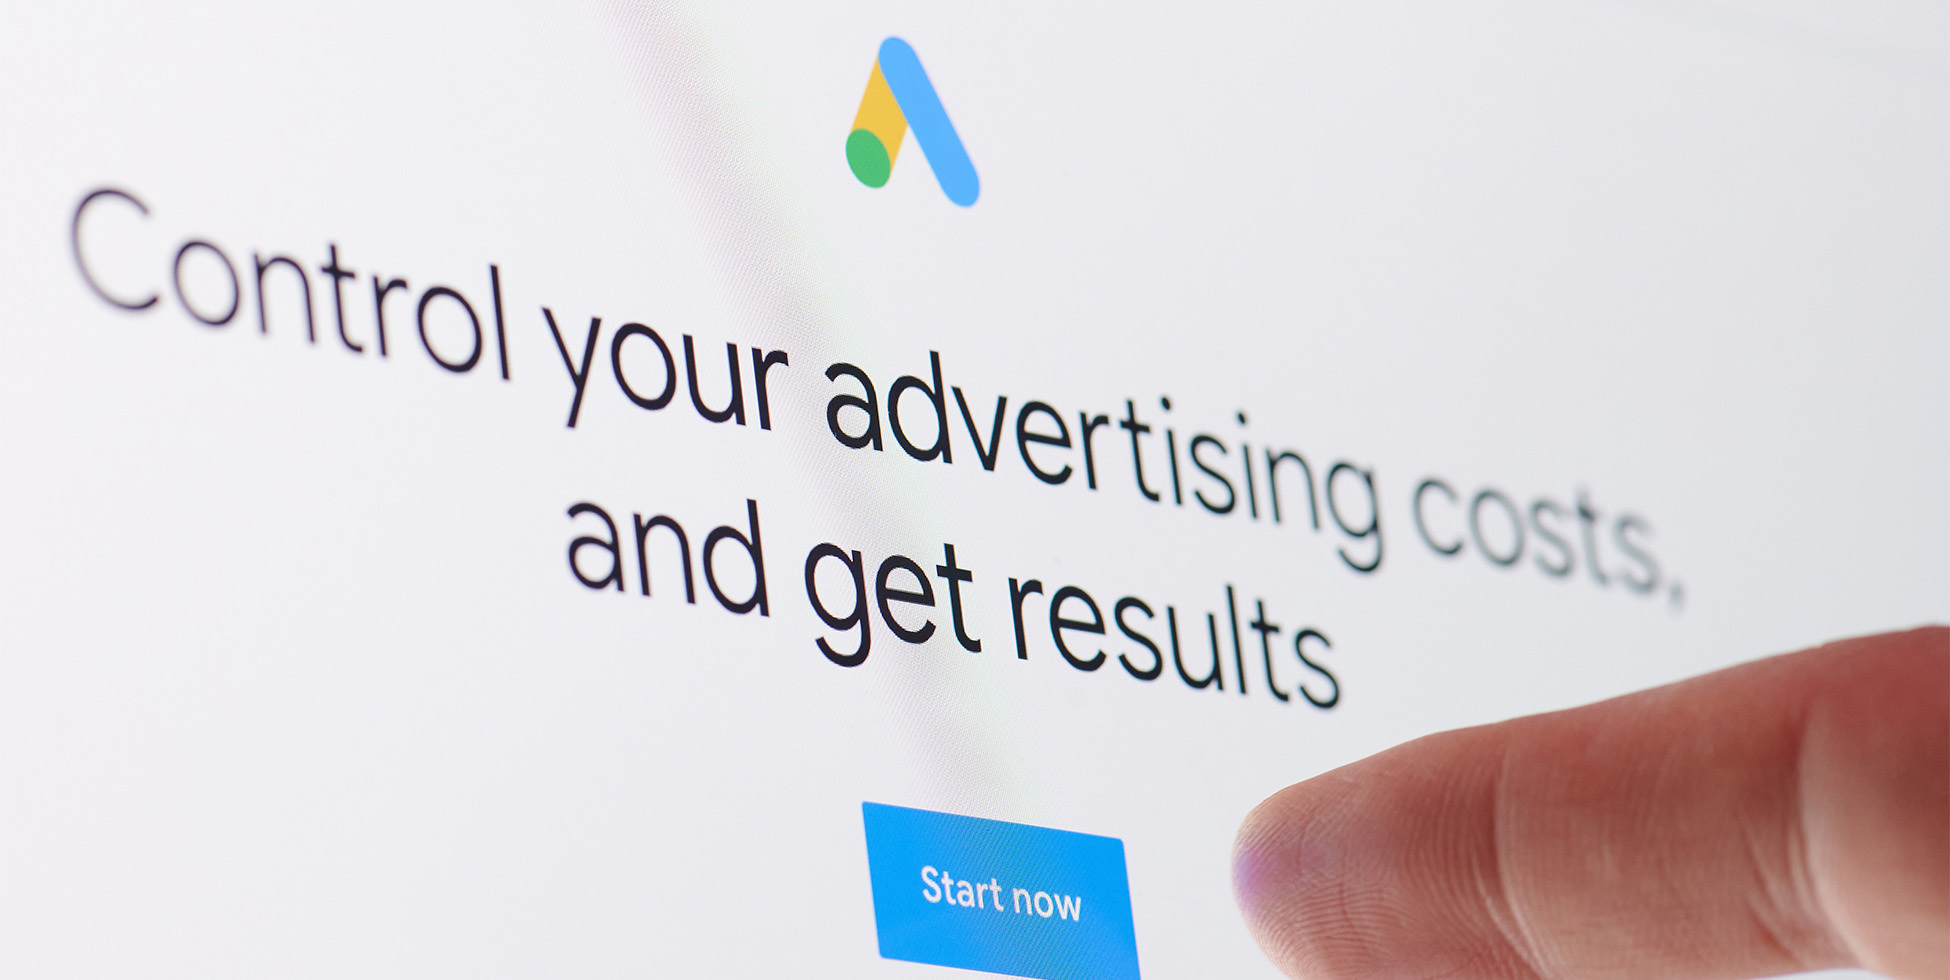 Jouw Google Ads door SPHYNX branding agency uit Kortrijk. Bedenken, opzetten en optimaliseren van advertenties voor op Google.